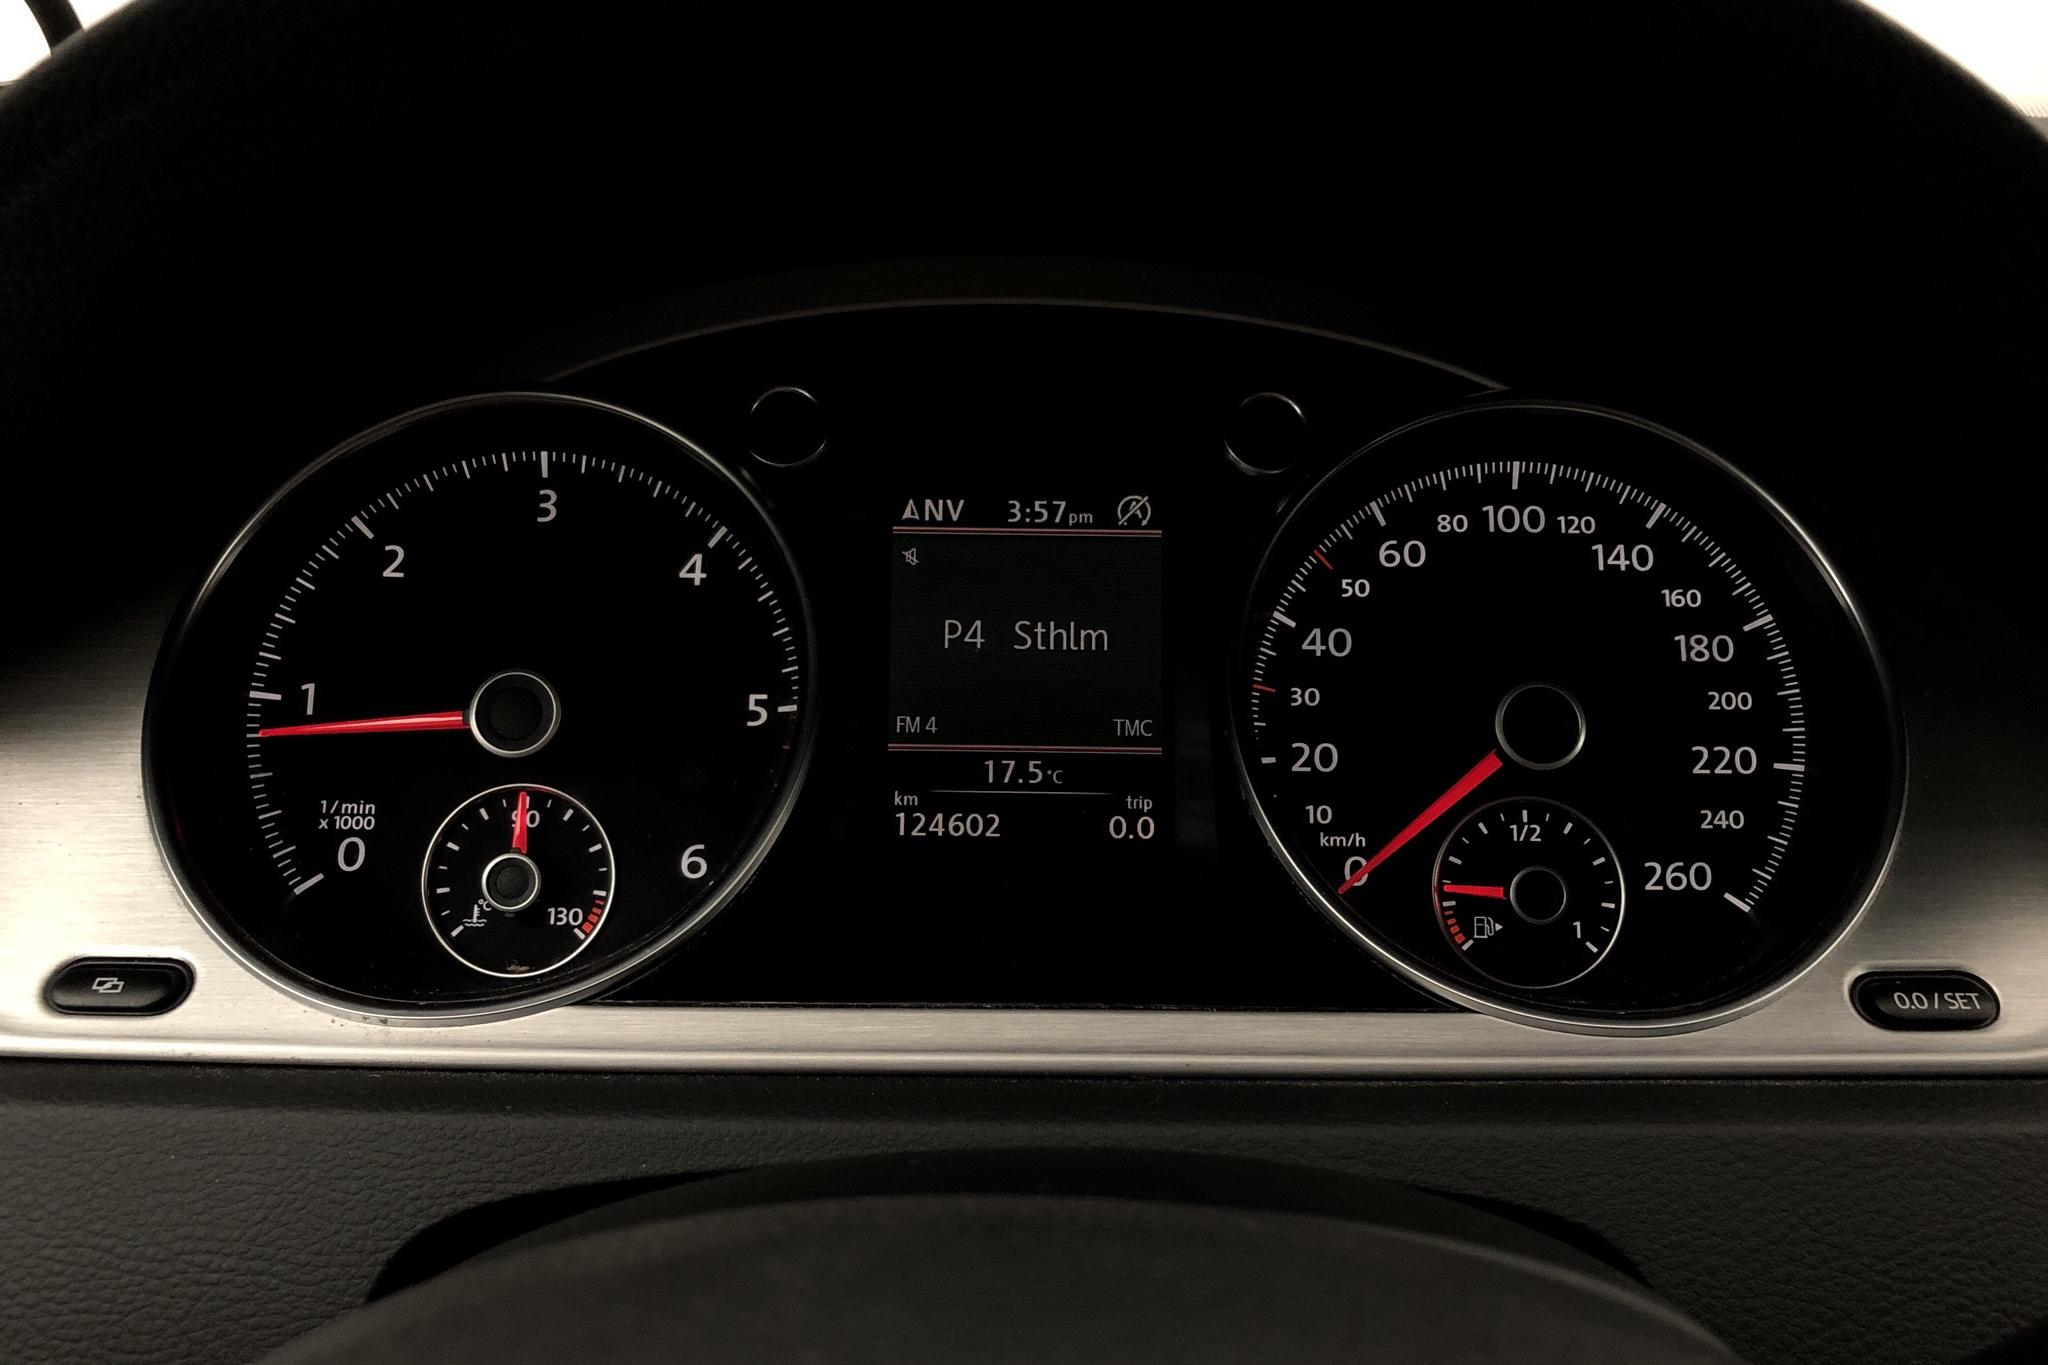 VW Passat Alltrack 2.0 TDI BlueMotion Technology 4Motion (170hk) - 12 460 mil - Automat - silver - 2012